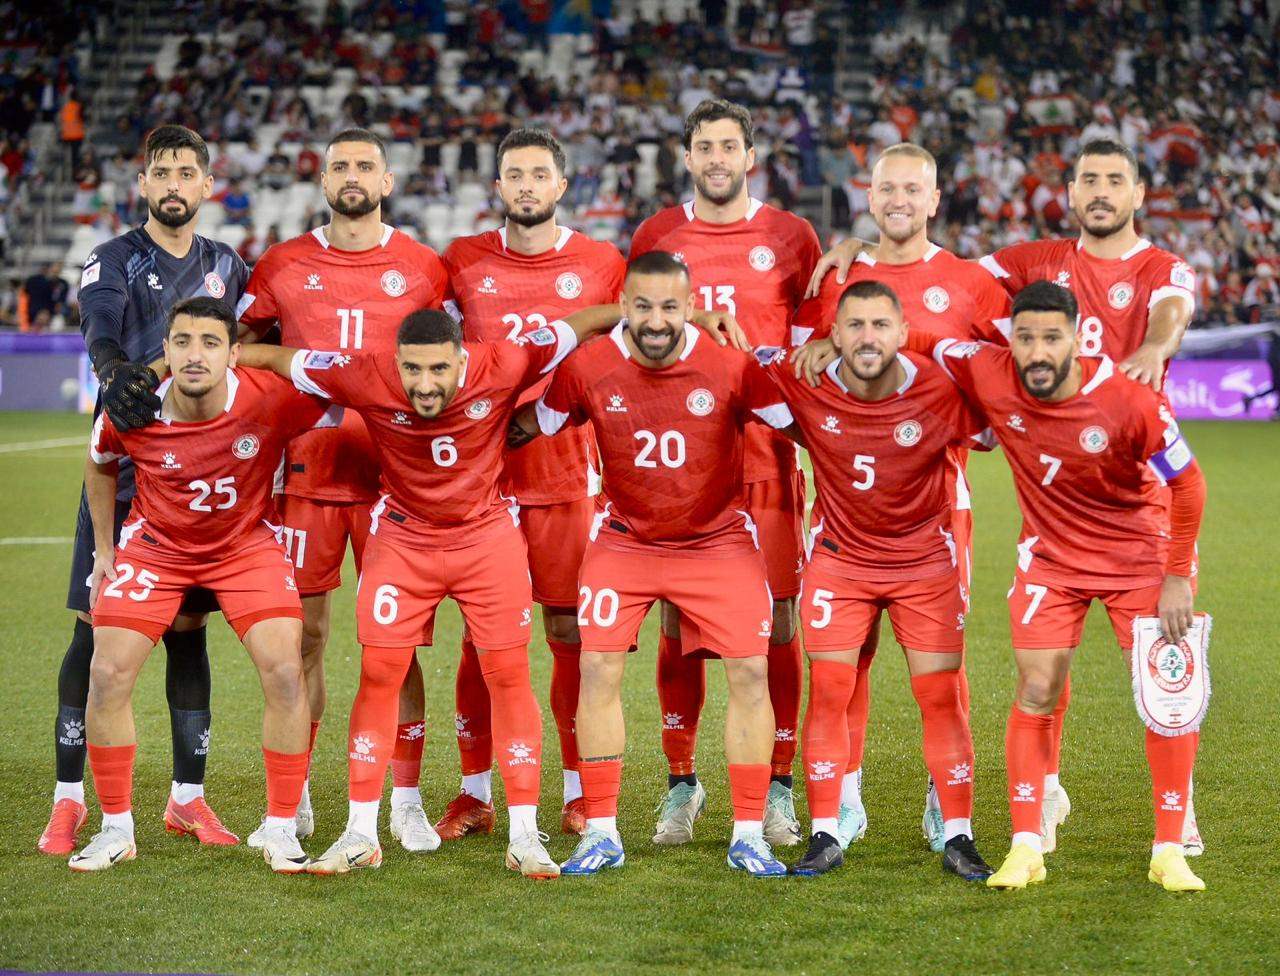 كأس آسيا - لبنان يخسر أمام طاجيكستان ويخرج من المسابقة